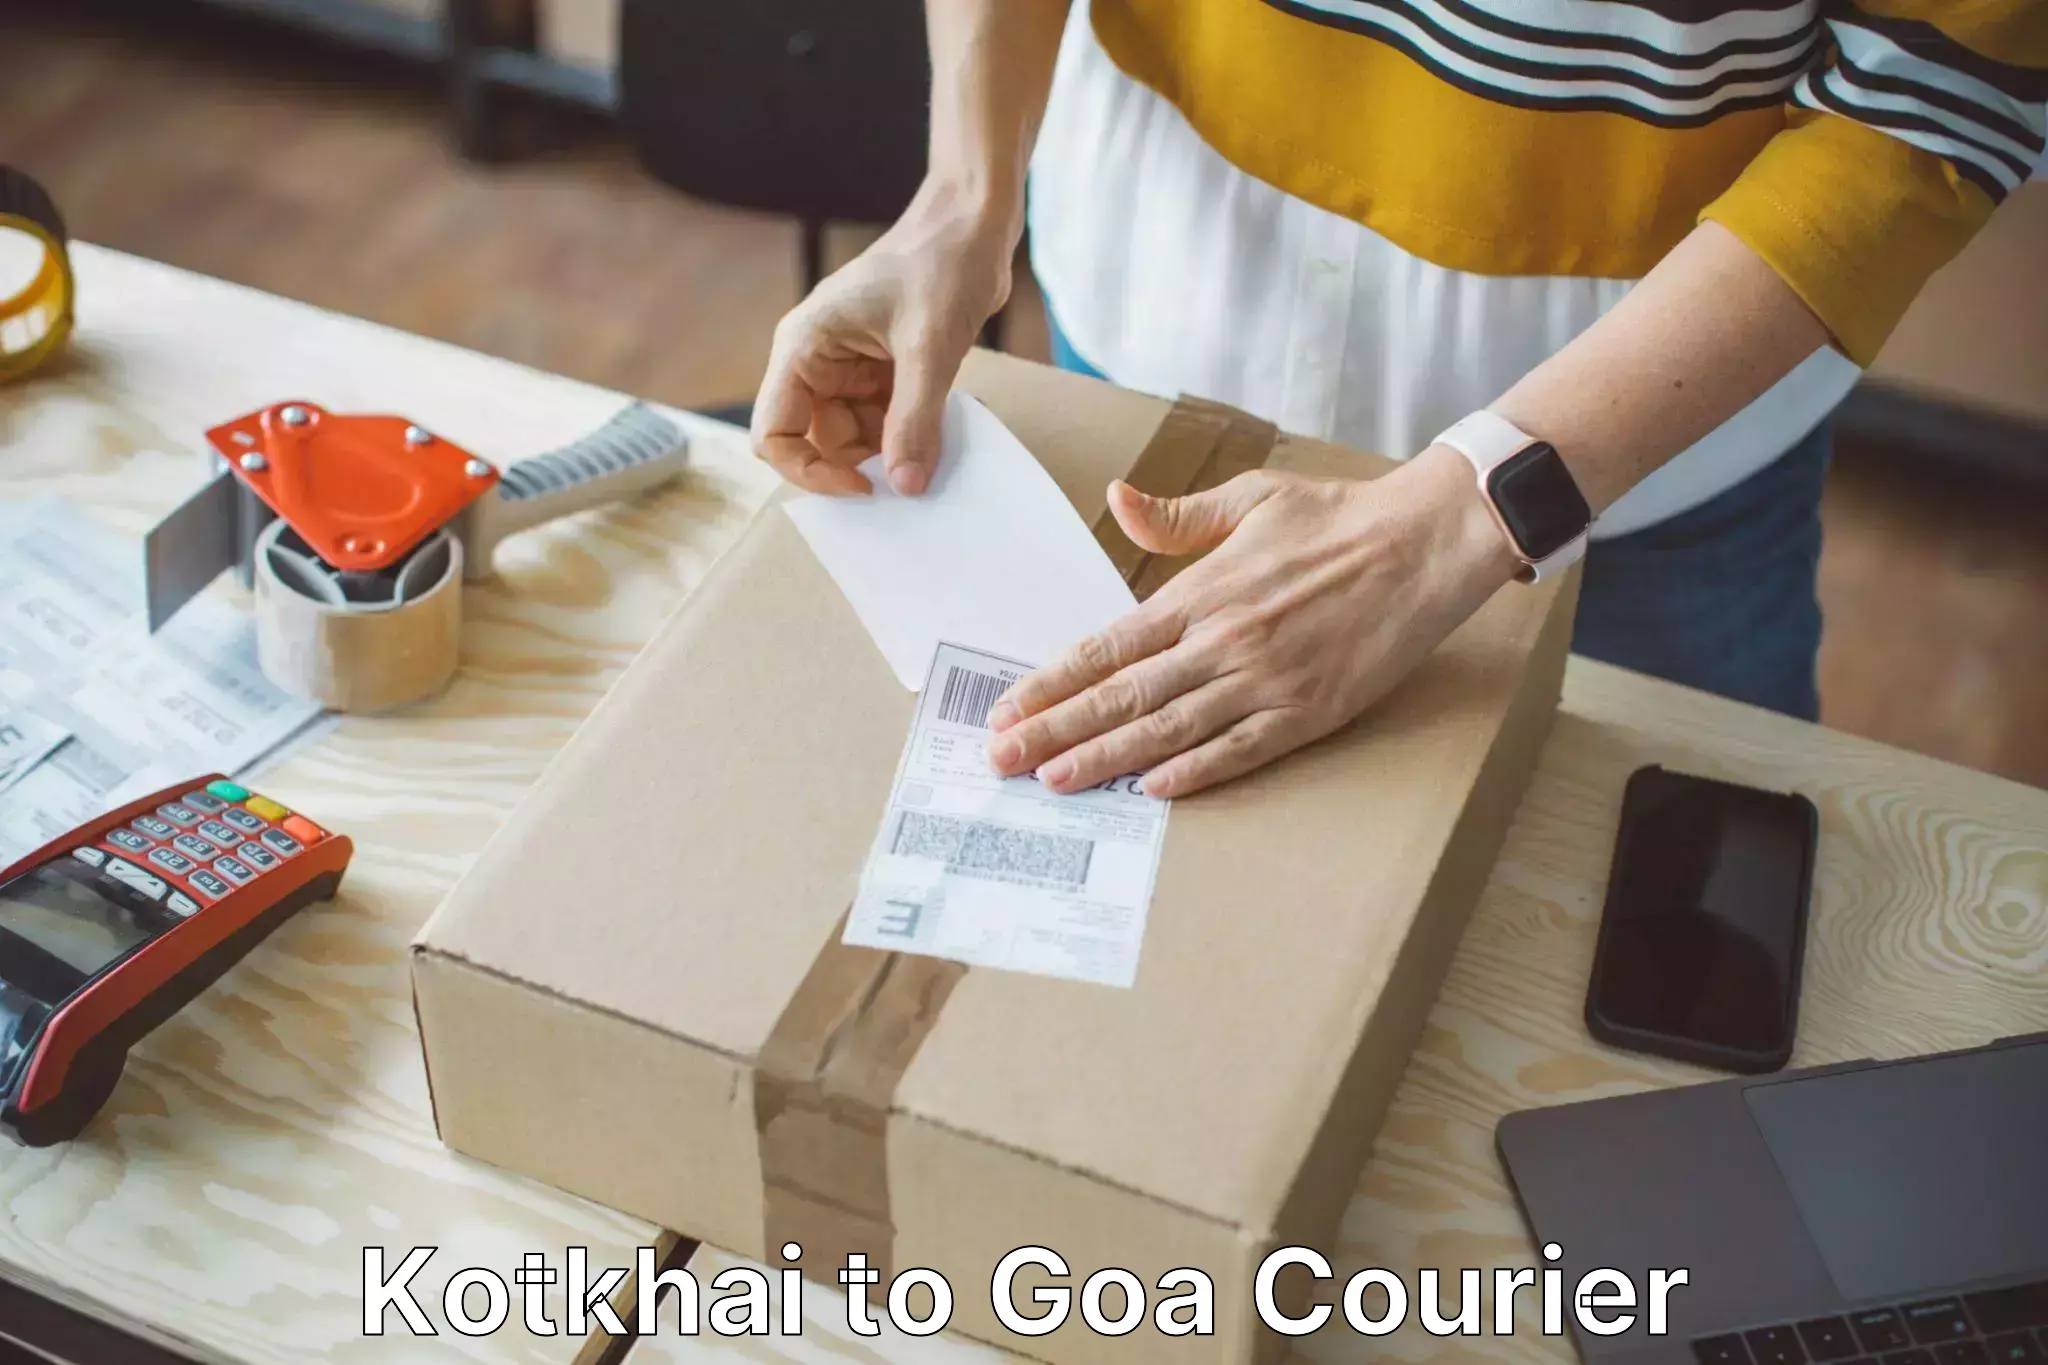 Luggage shipment processing Kotkhai to Goa